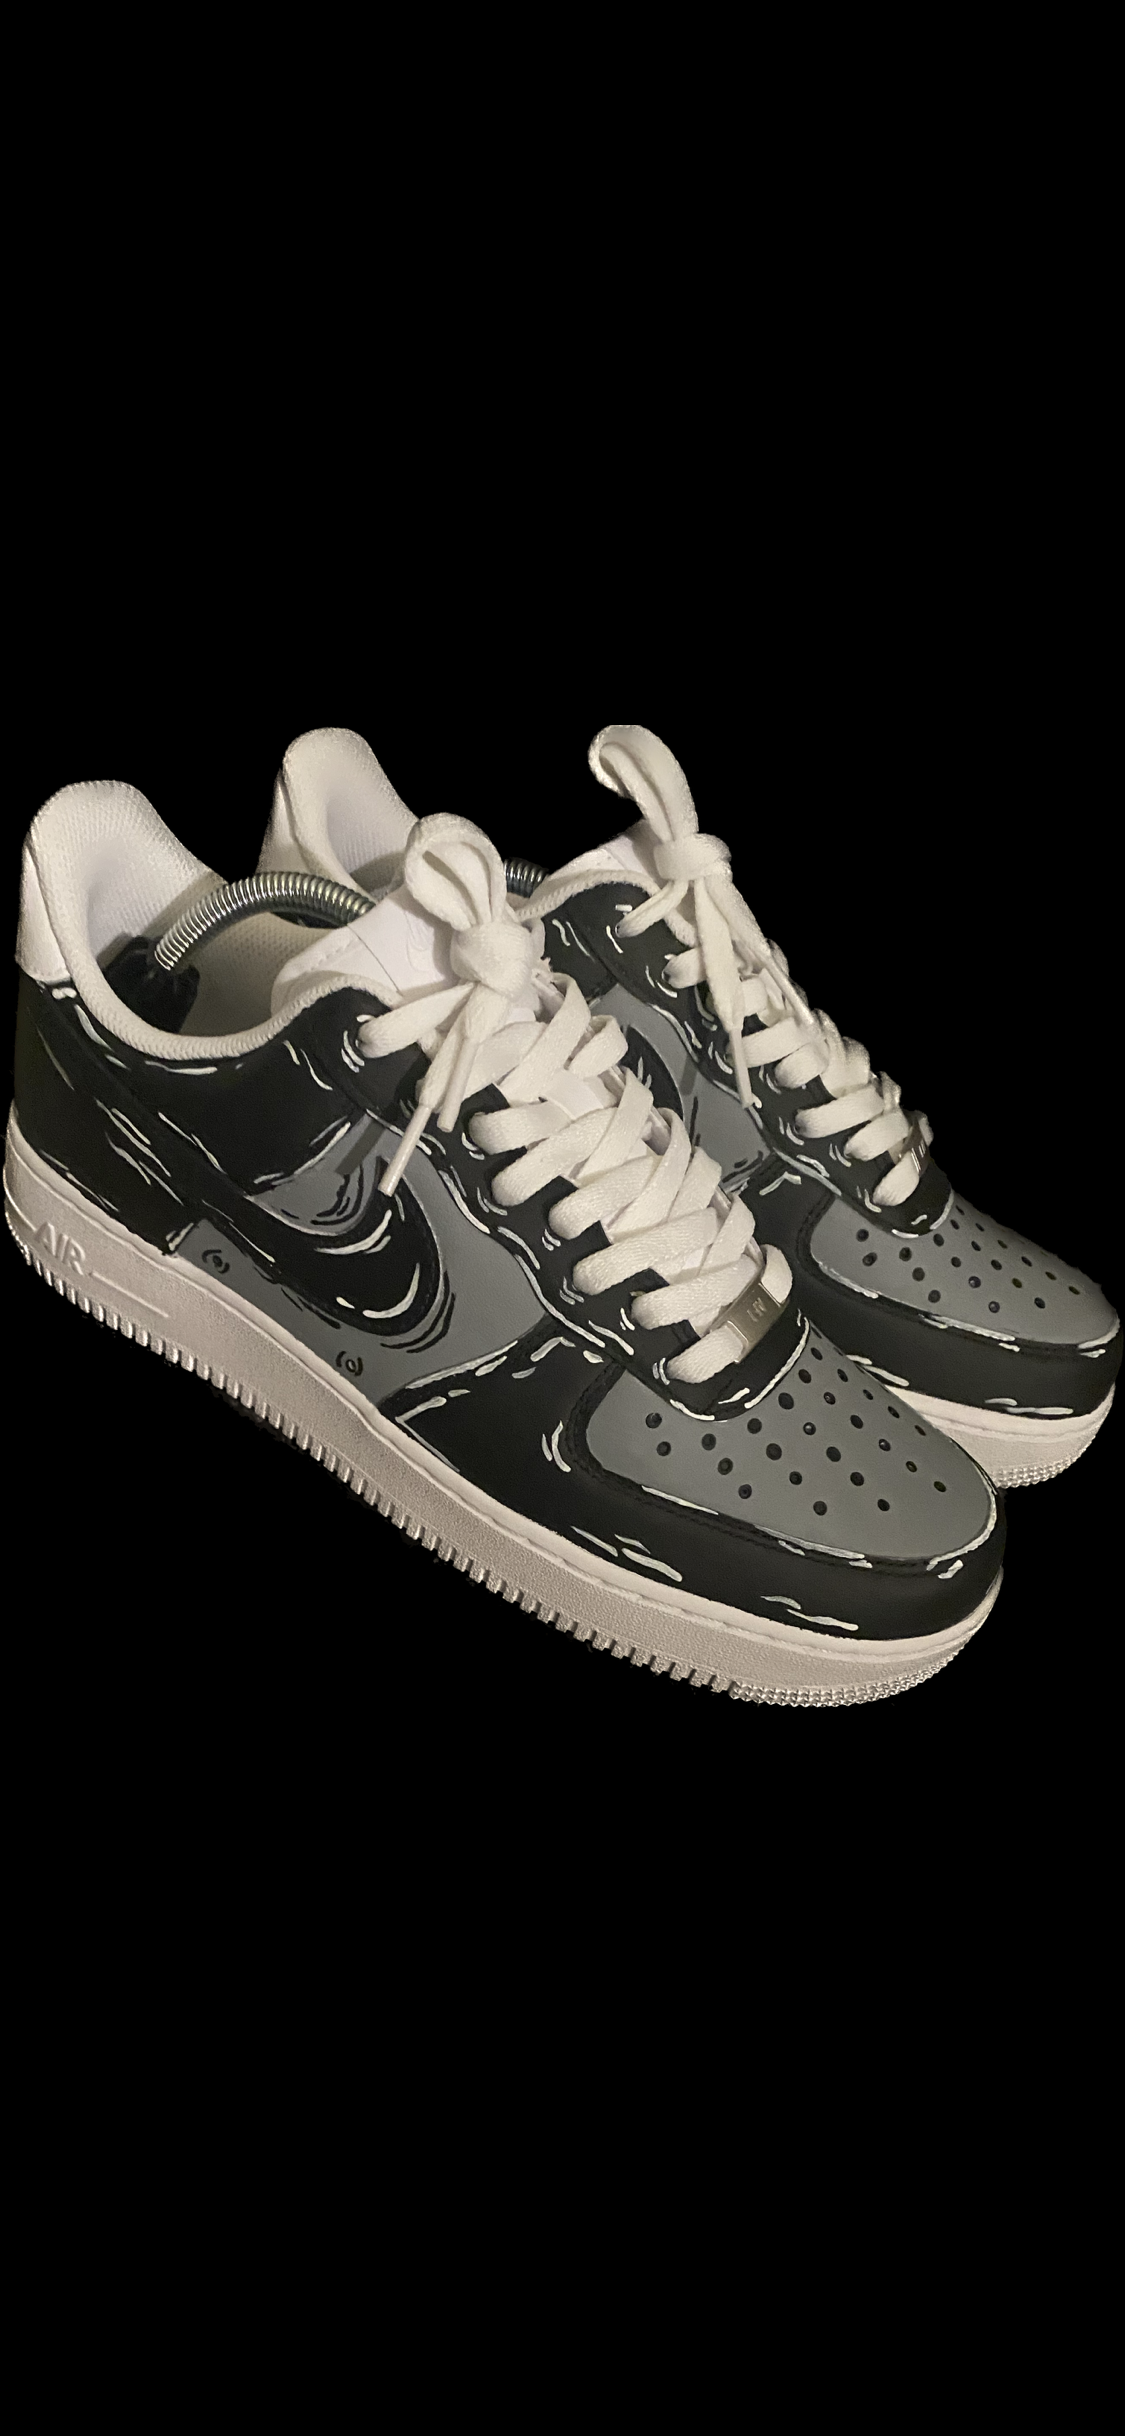 Black Dripping Custom Air Force 1 Sneakers 7 Y / 8.5 W